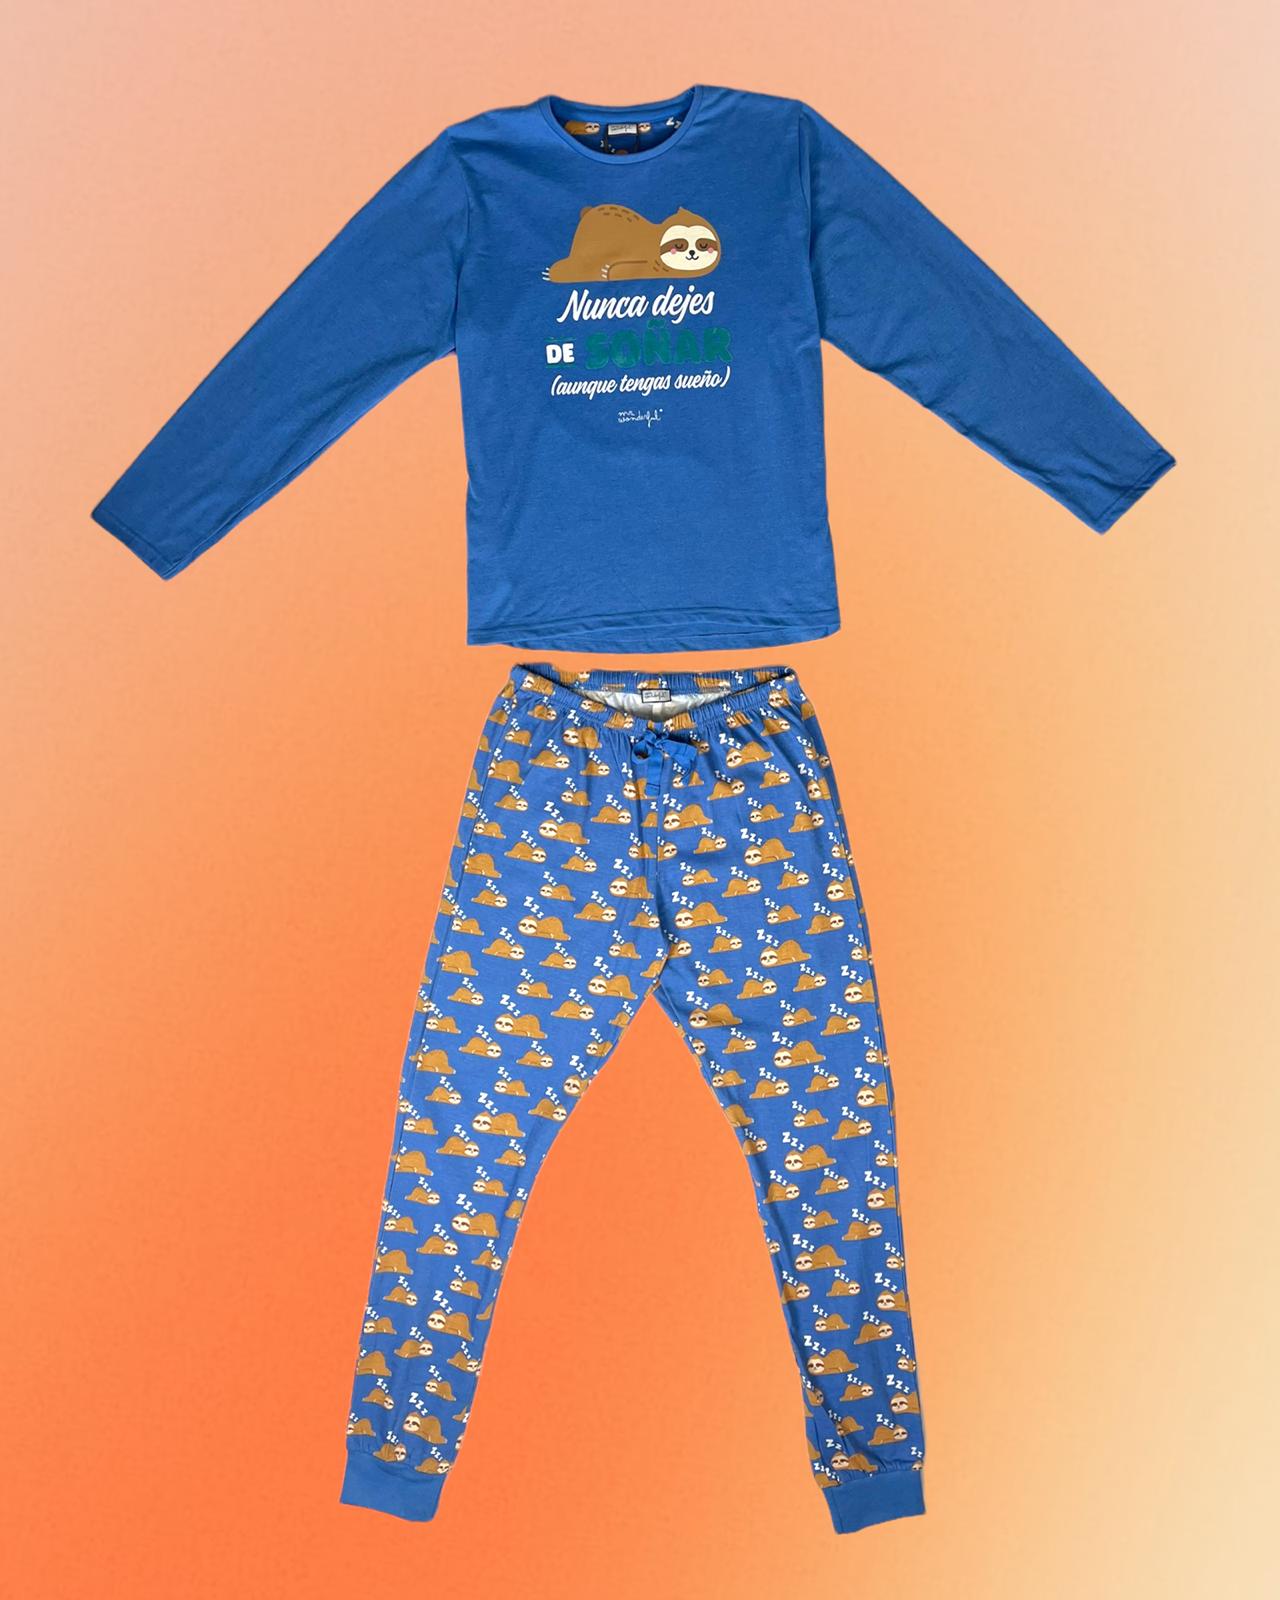 Mr. Wonderful | Pijama azul Nunca dejes de soñar Da Ponte